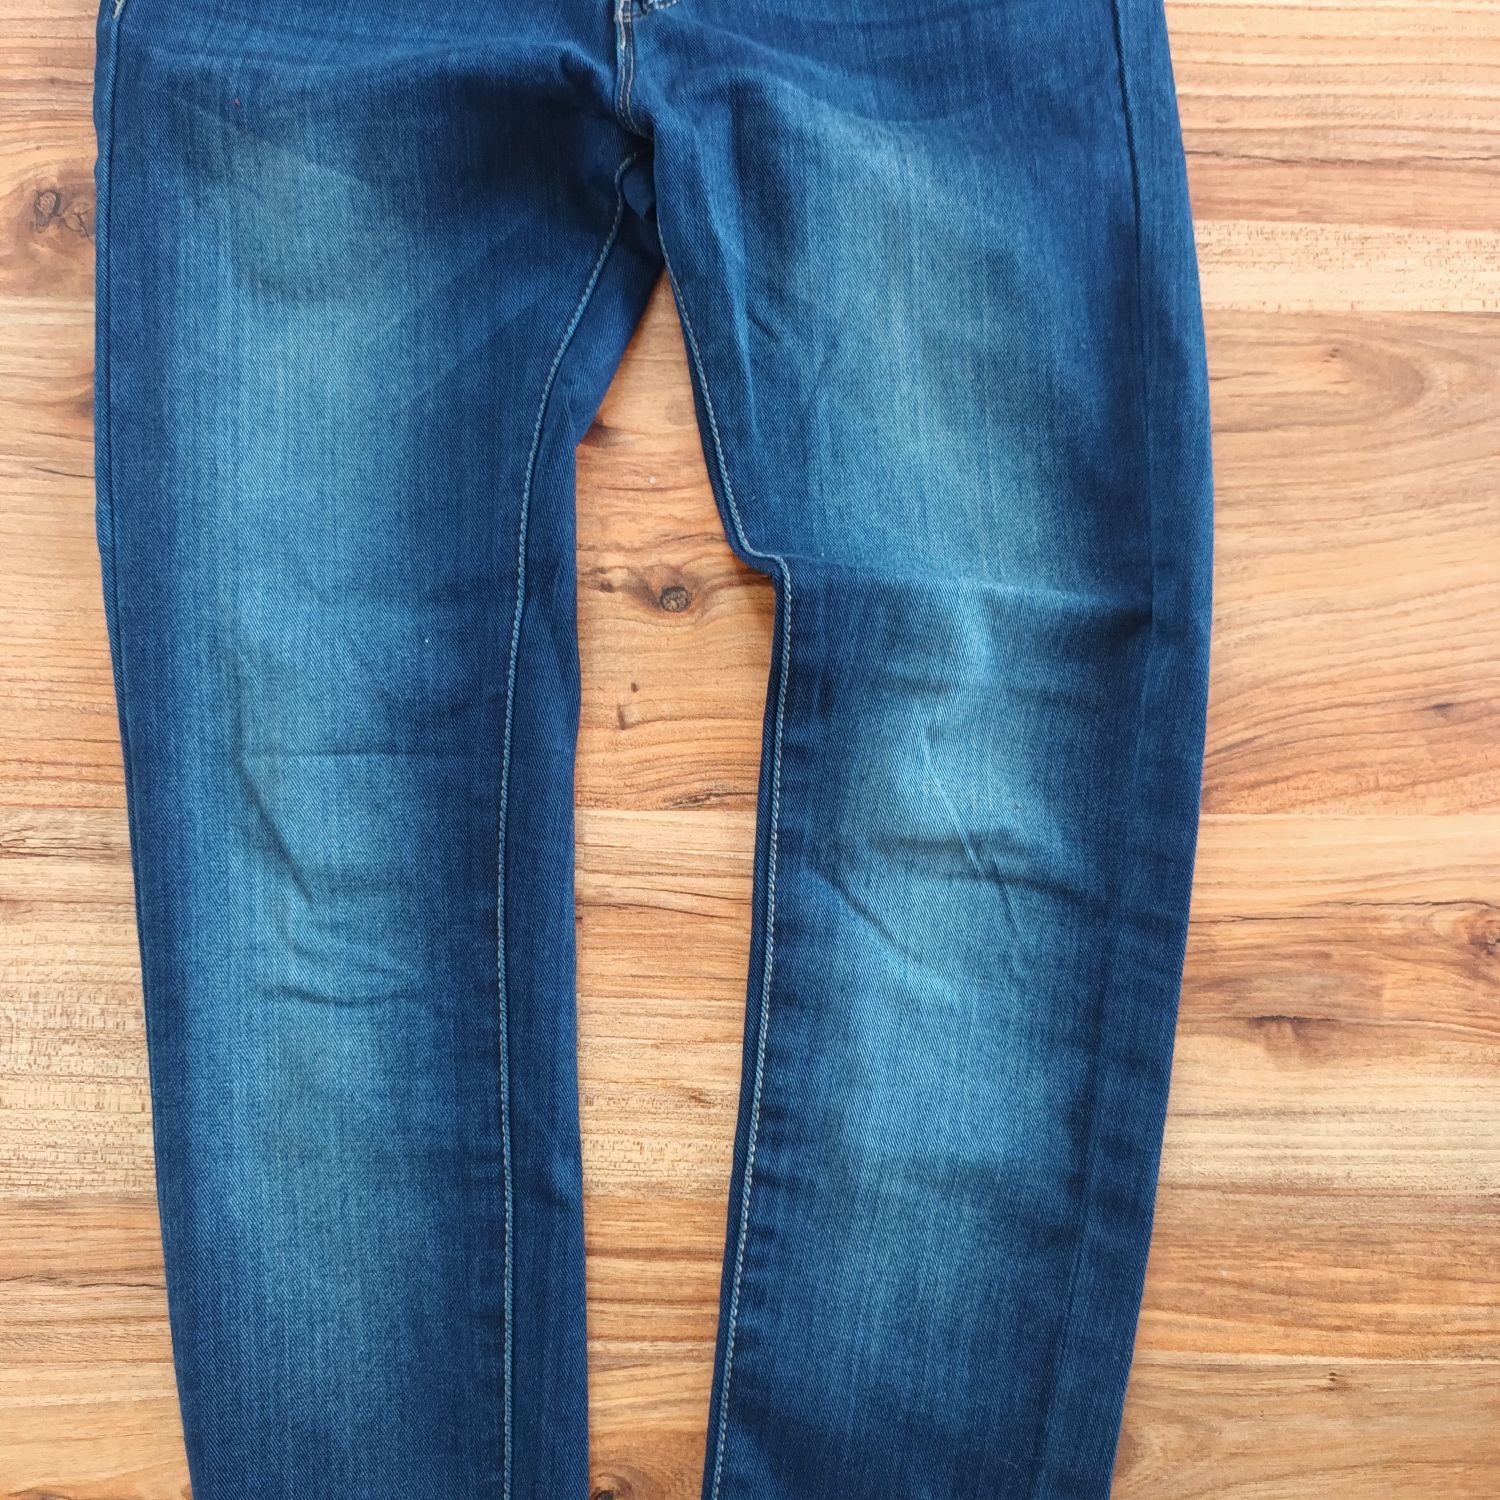 Nowe elastyczne jeansy rurki jegginsy niebieskie spodnie jeansowe M 38